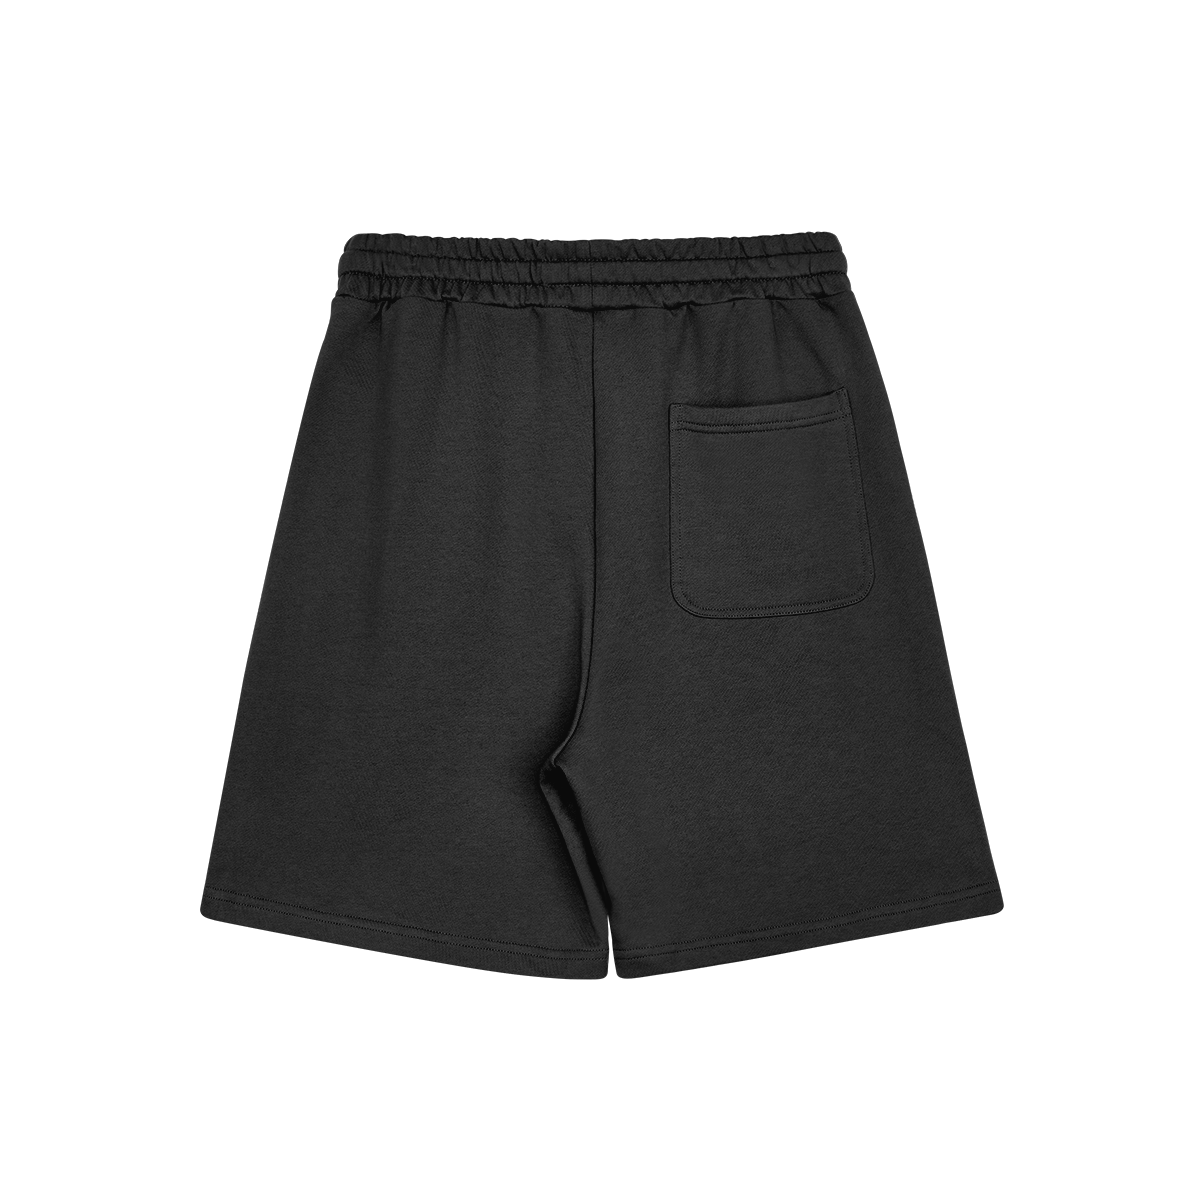 R.I.P Shorts (Clean)